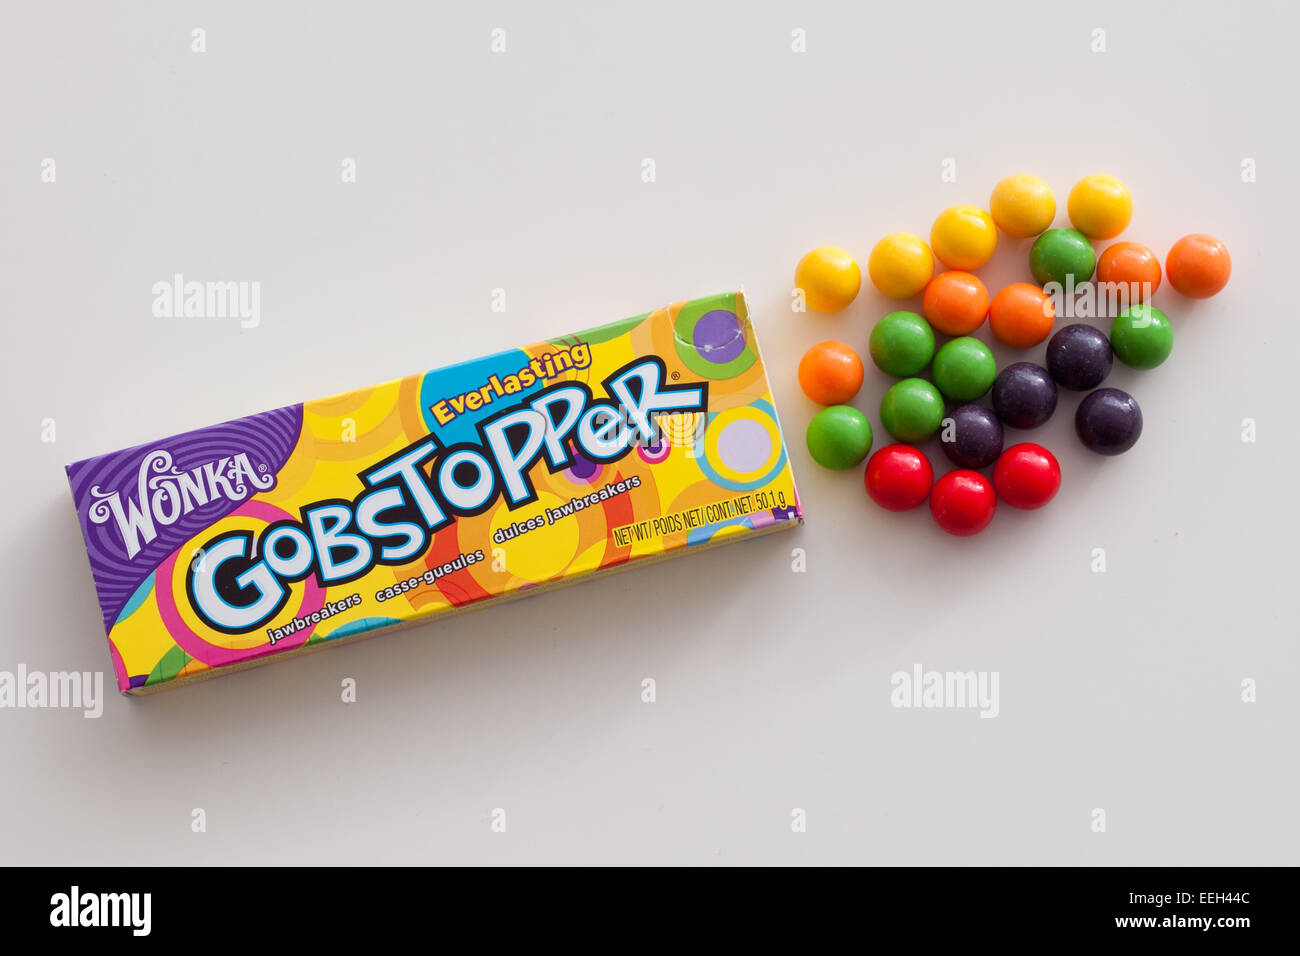 Eine Schachtel mit ewig Gobstopper Bonbons.  Von Willy Wonka Candy Company, eine Marke von Nestlé hergestellt. Stockfoto